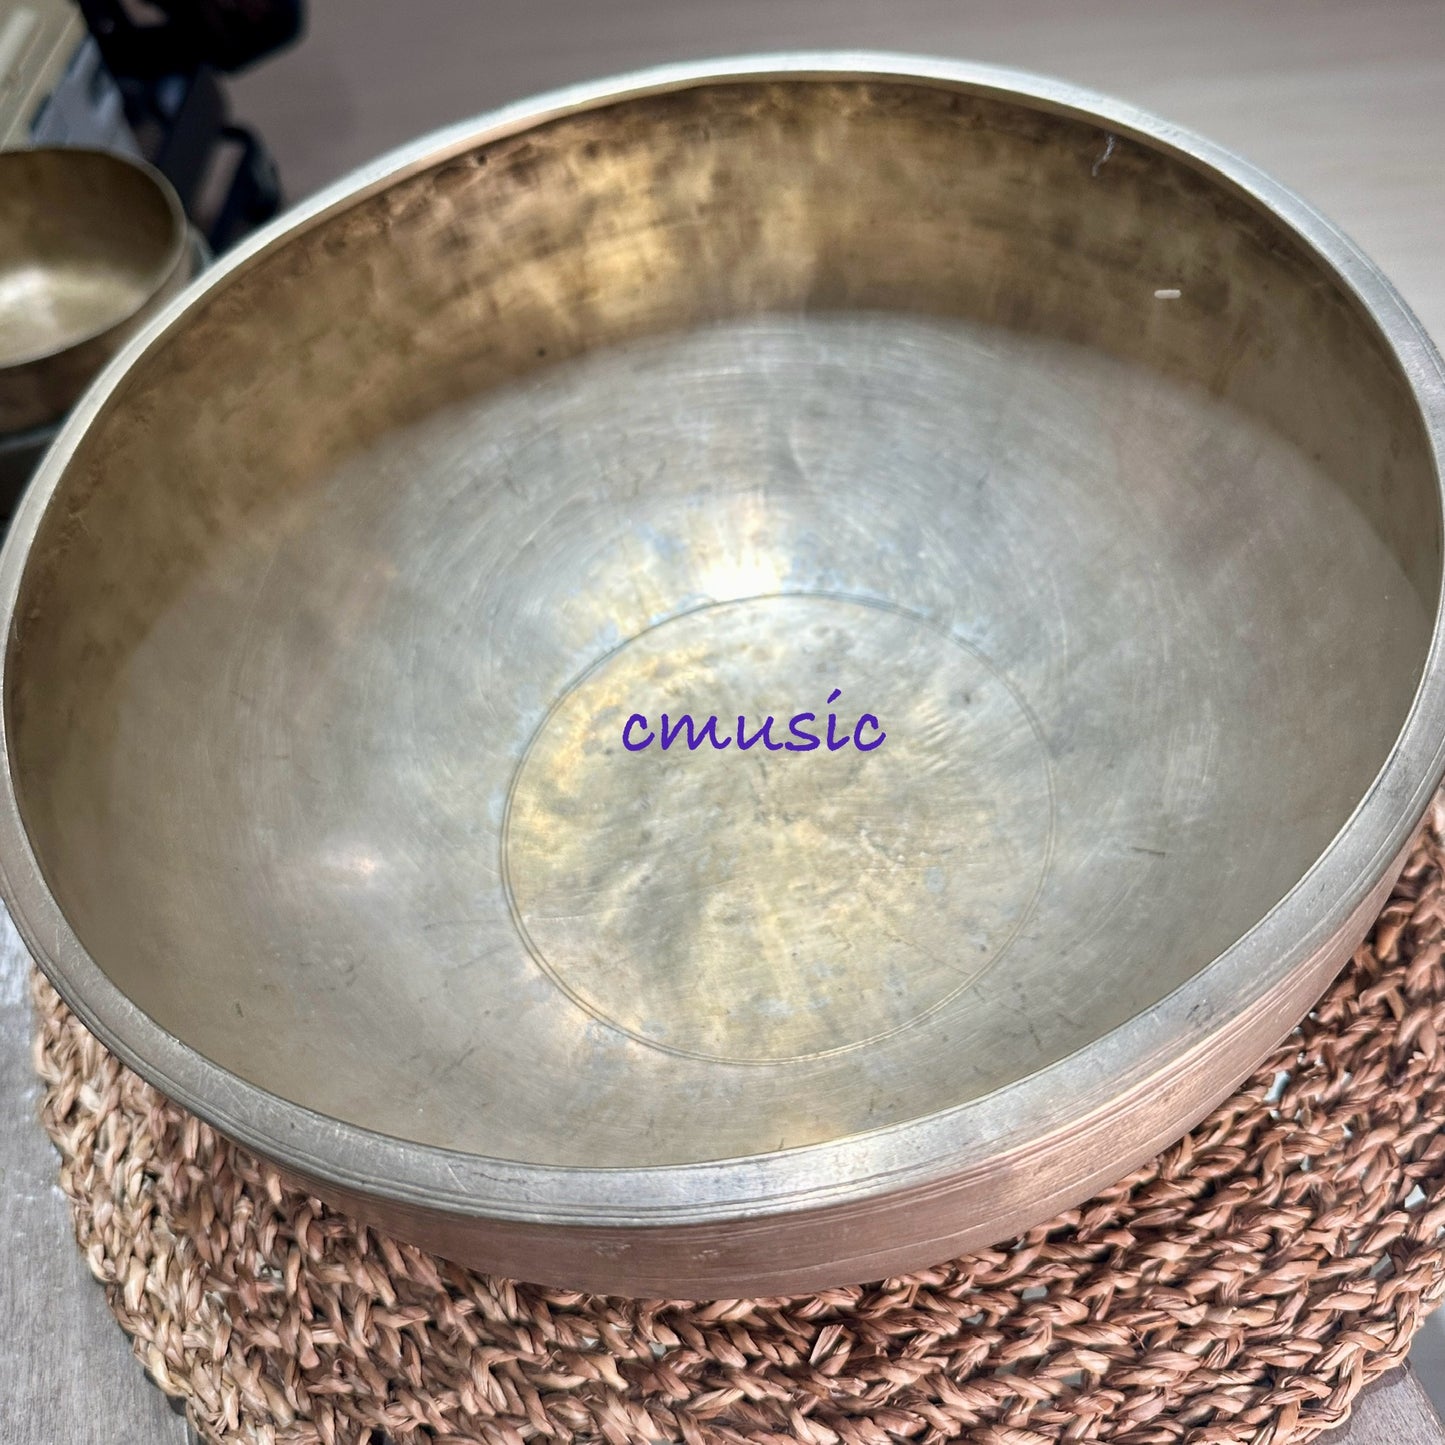 Antique Jambati Singing Bowl 古董頌缽 28cm-Note C3